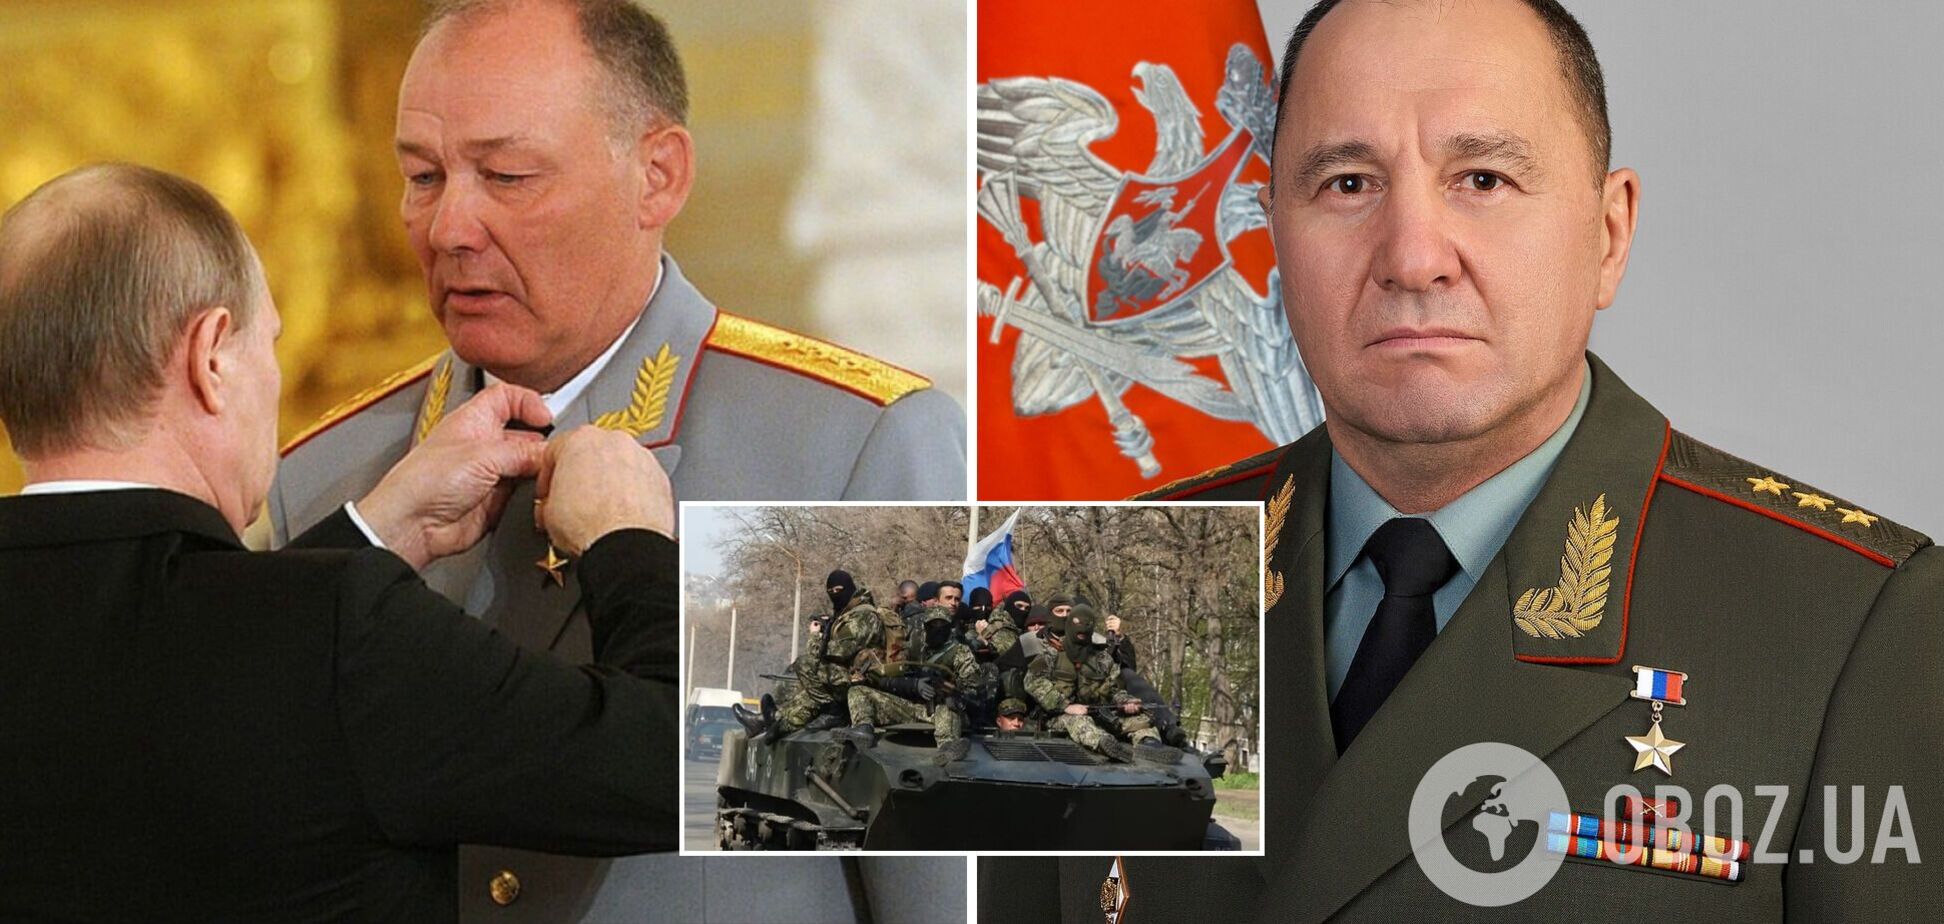 Дворникова отстранили от командования войной в Украине, главным Кремля по 'спецоперации' стал Жидко – CIT